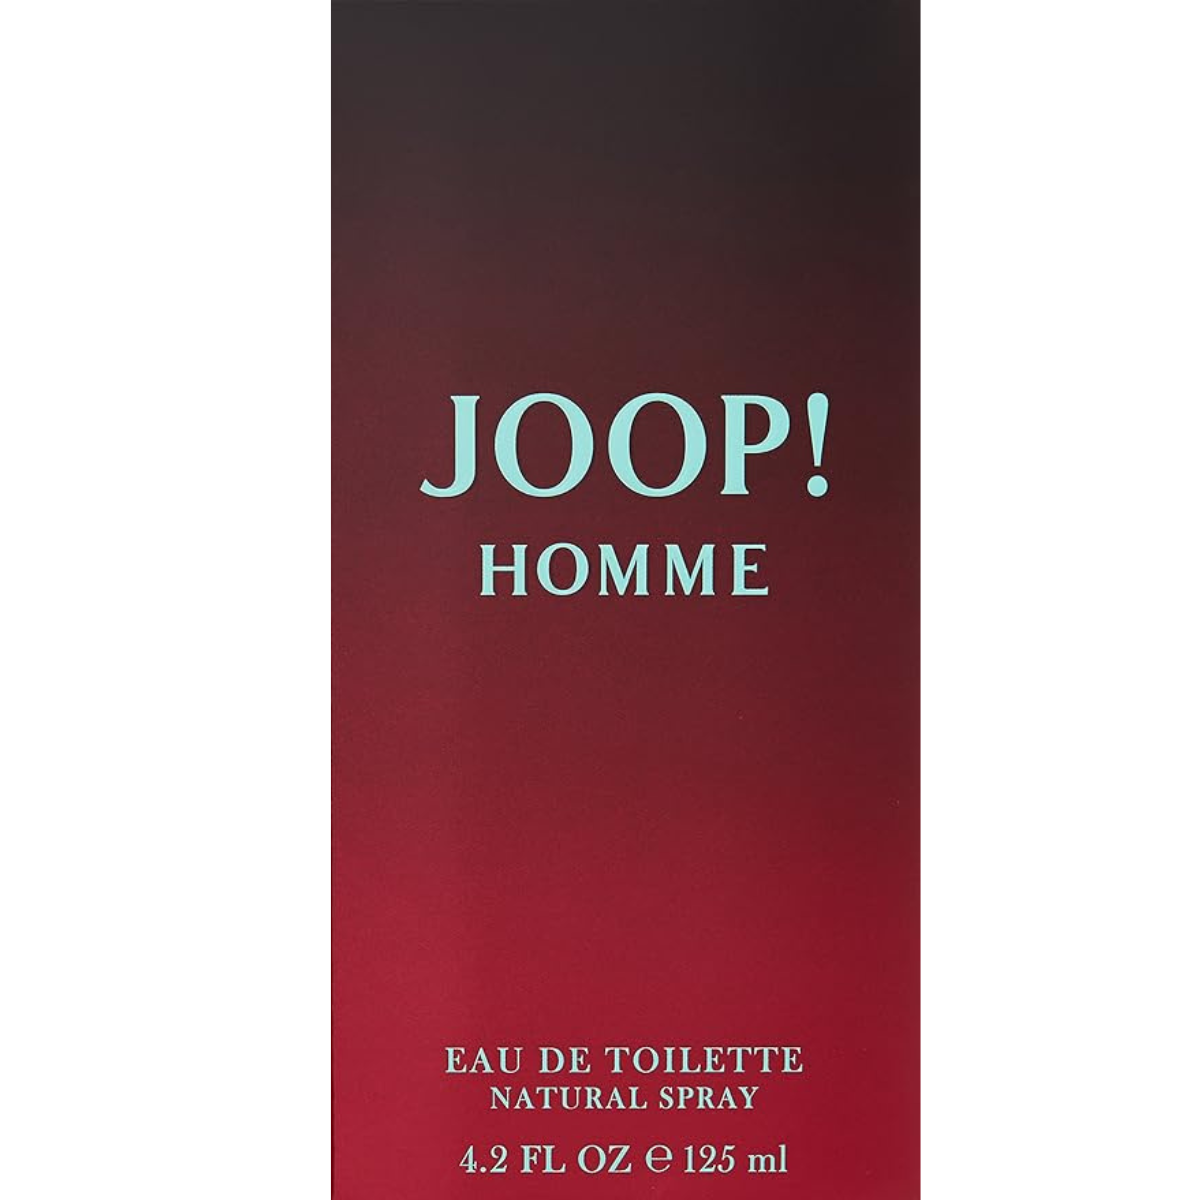 Joop Homme 125 ml for Men